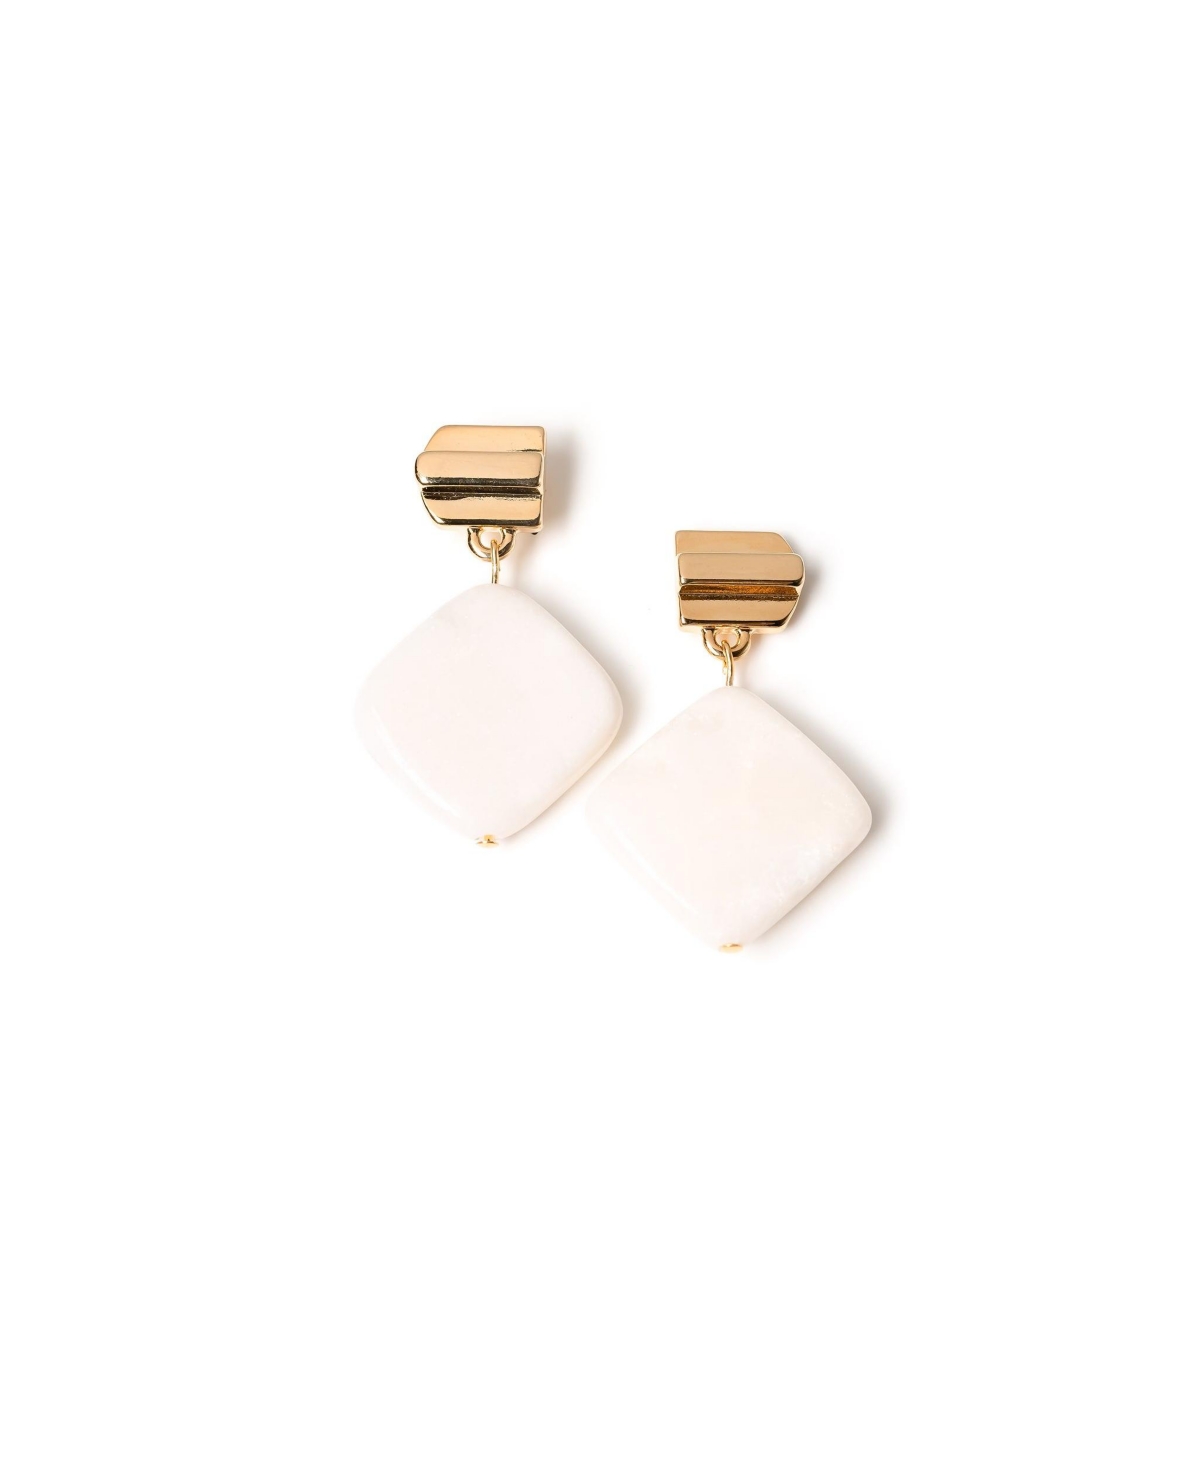 Layered Dome + White Jade Earrings - White